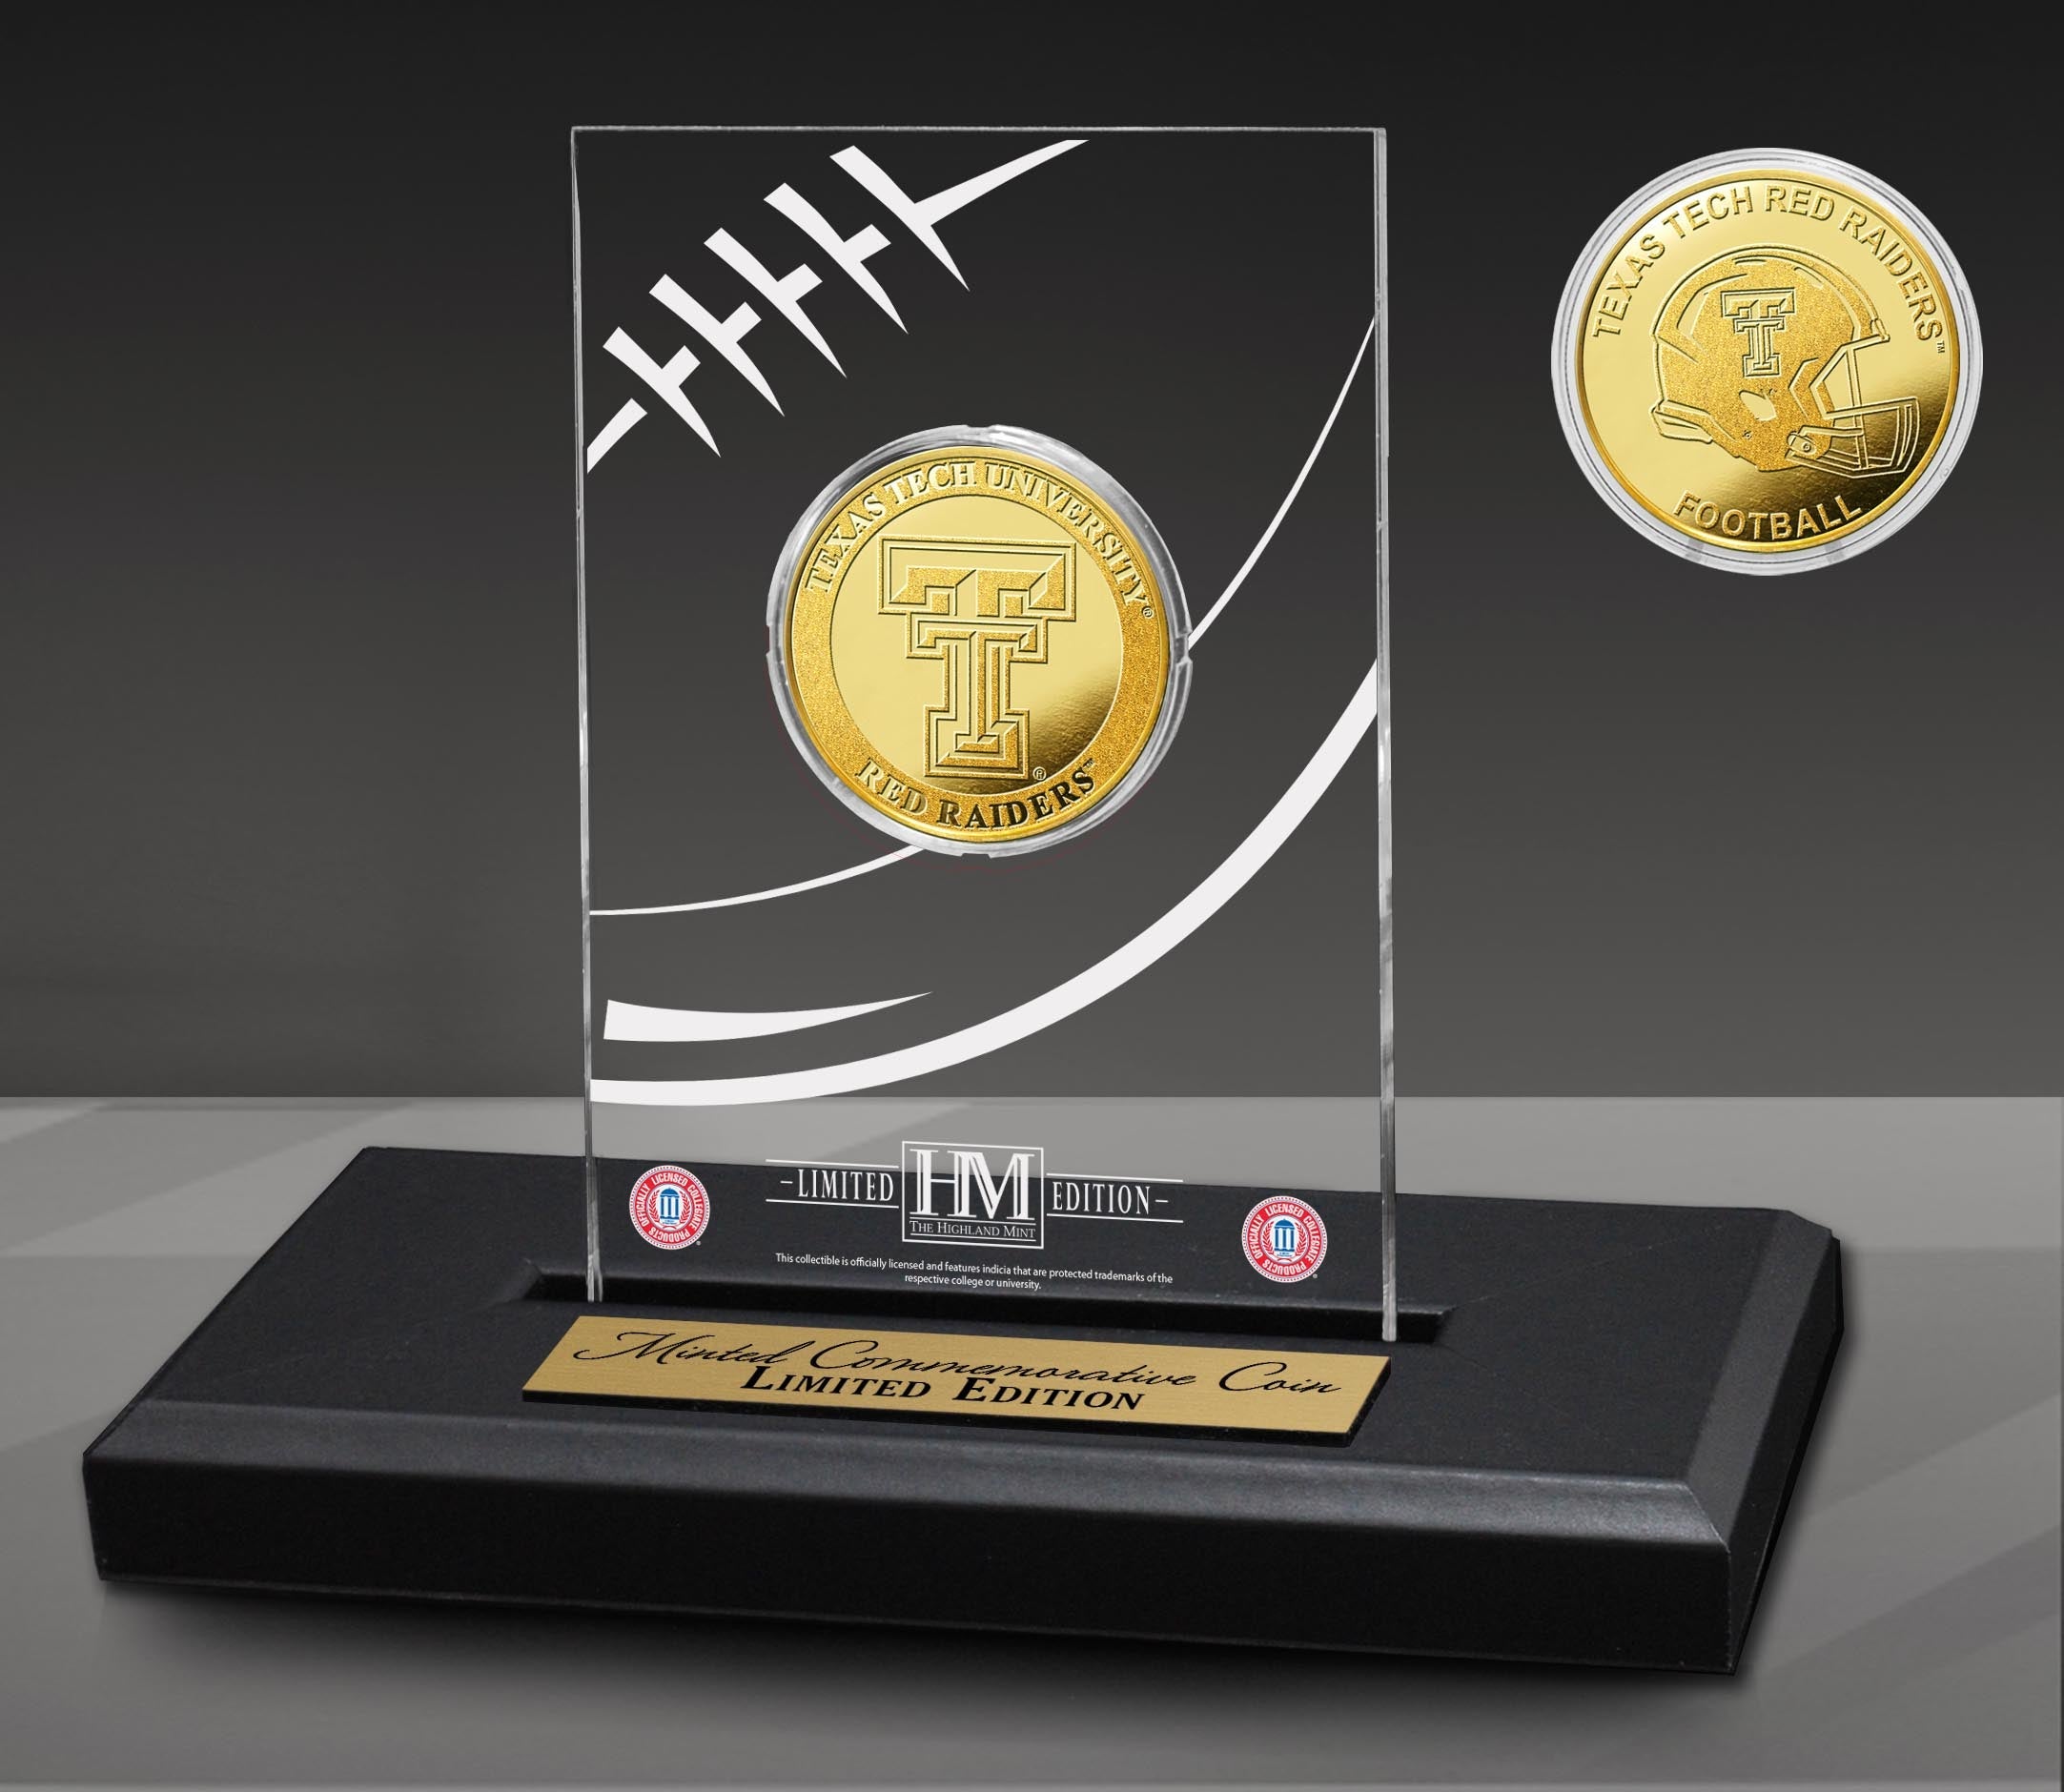 Texas Tech University Red Raiders Gold Coin in AcrylicÃƒâ€šÃ‚Â Display